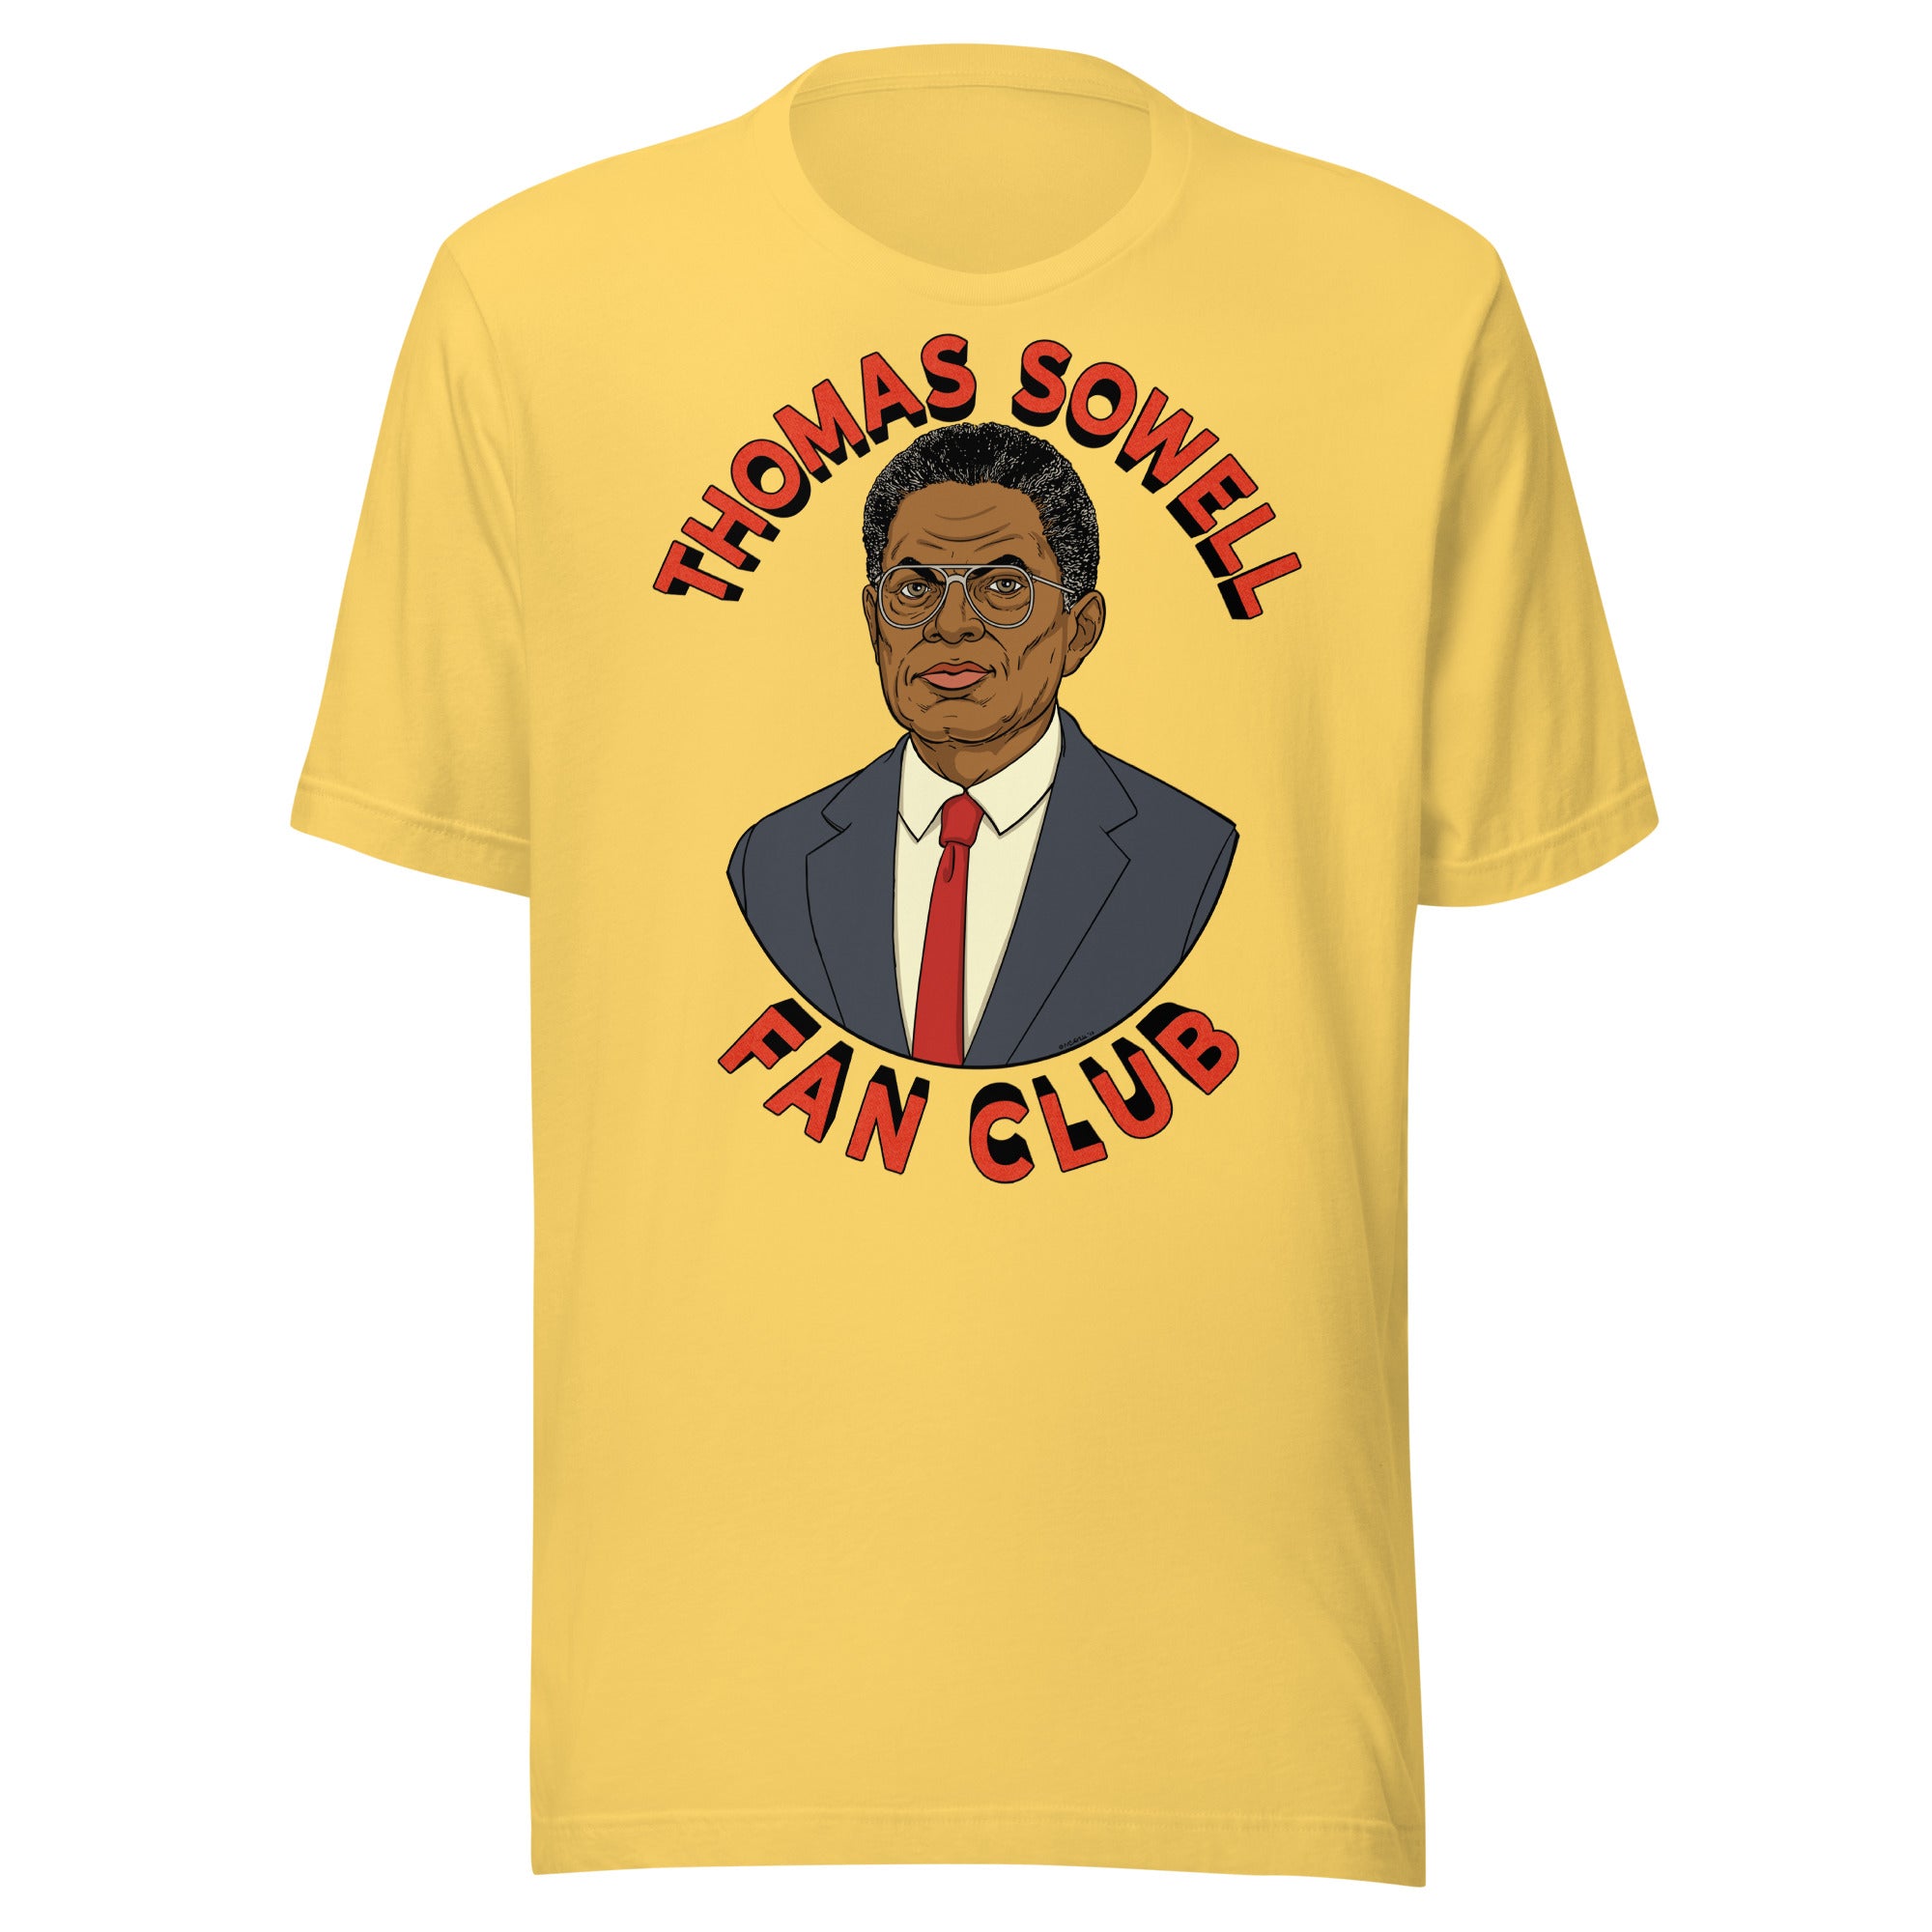 Thomas Sowell Fan Club Shirt